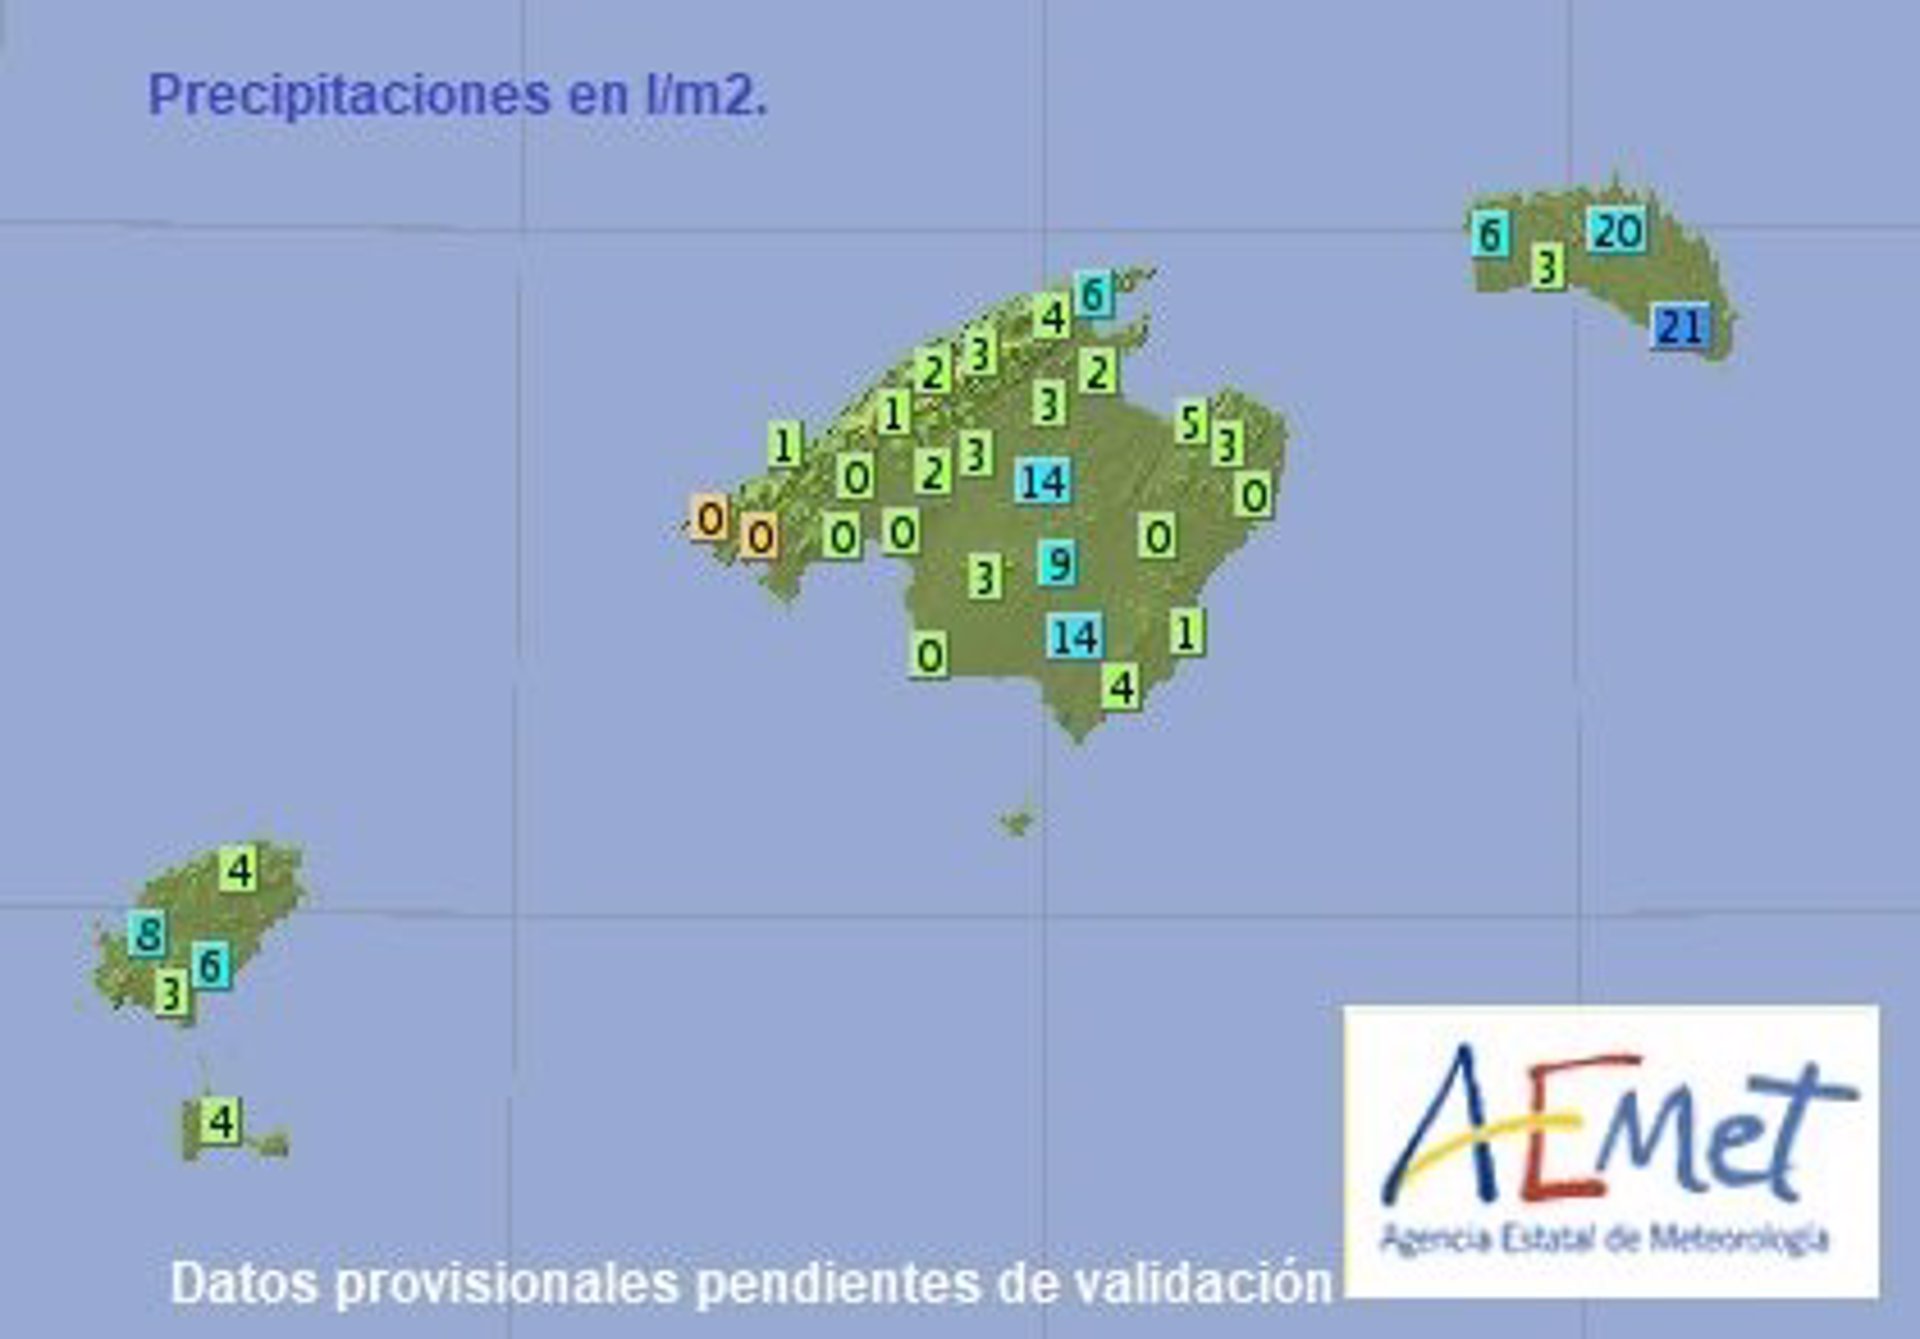 Menorca registra hasta 21 l/m2 en las últimas 24 horas